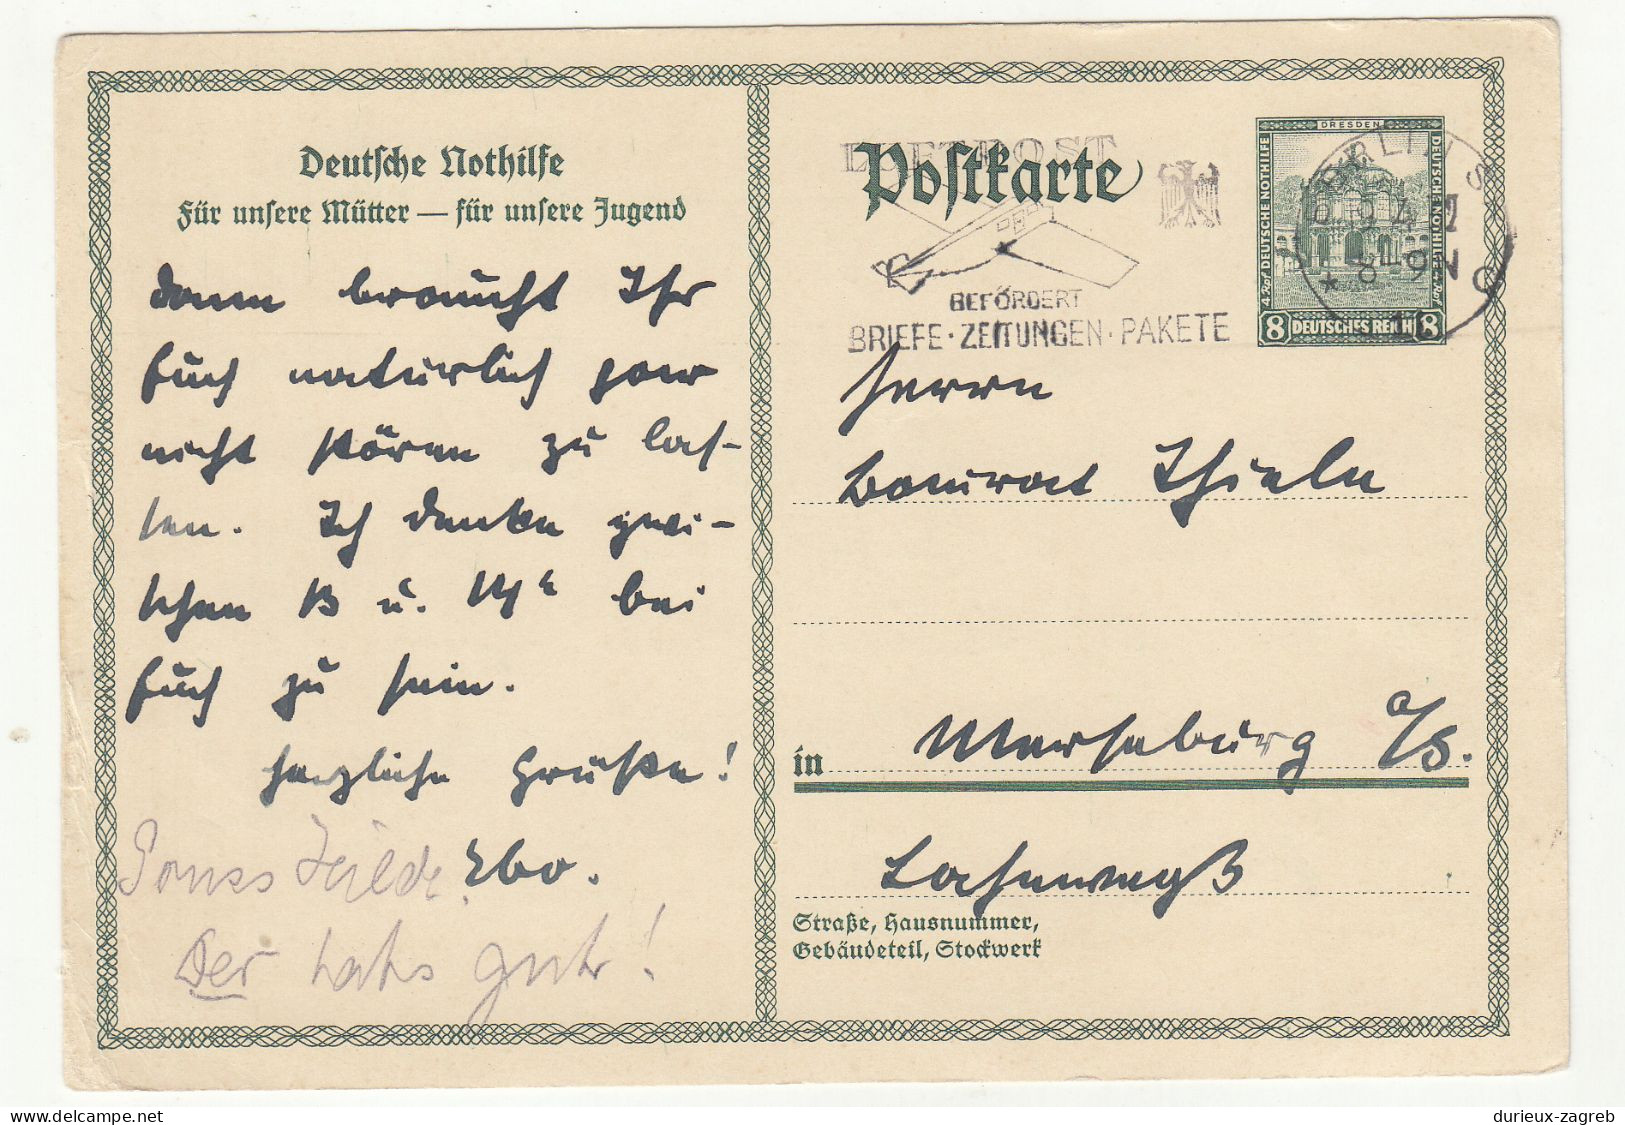 Germany Deutsche Nothilfe Postal Stationery Postcard Posted 1932 - Luftpost Slogan Postmark B240401 - Briefkaarten